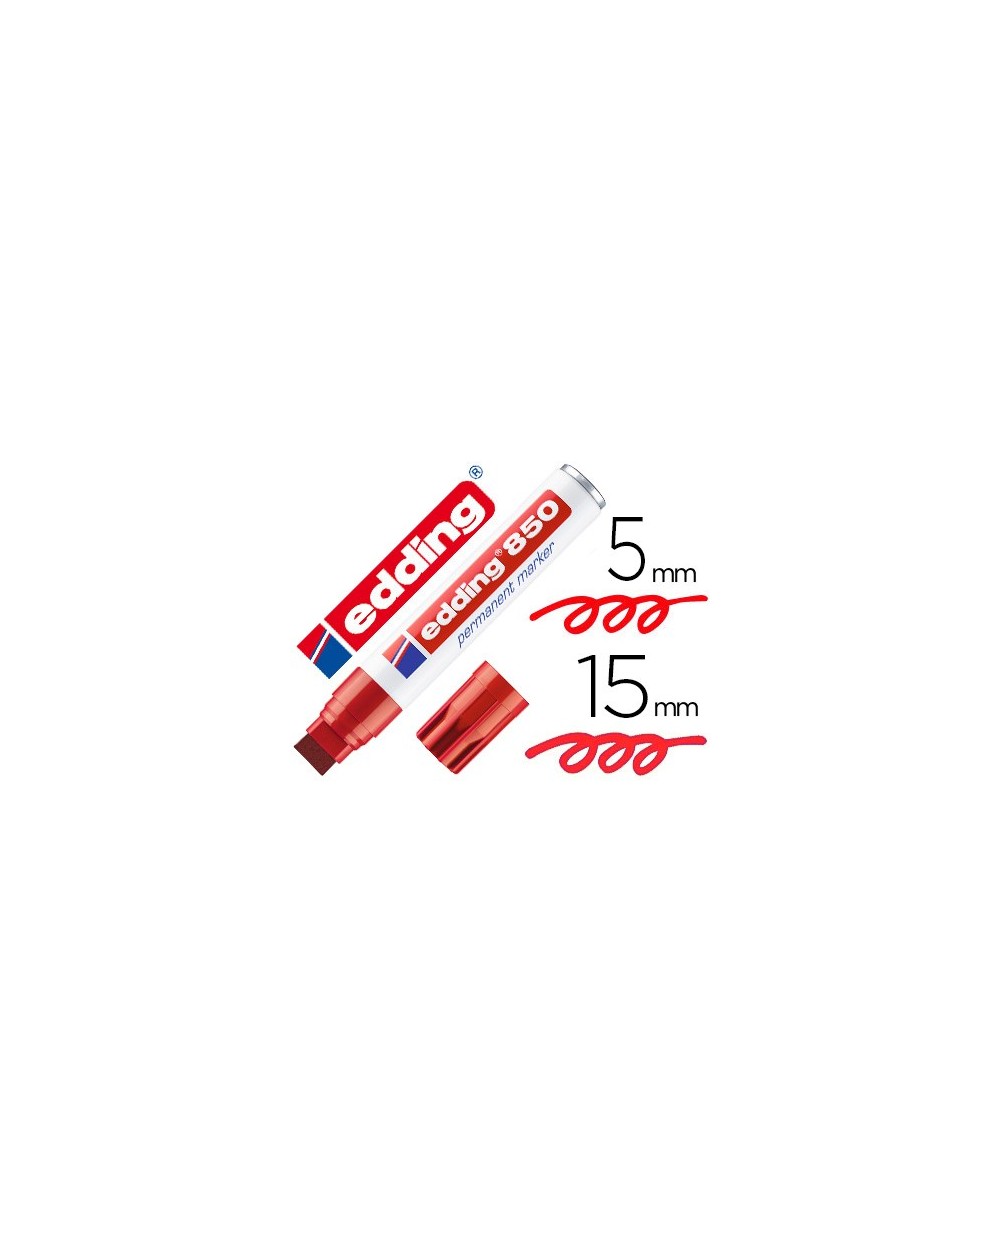 Rotulador edding marcador permanente 850 rojo punta biselada 5 15 mm recargable